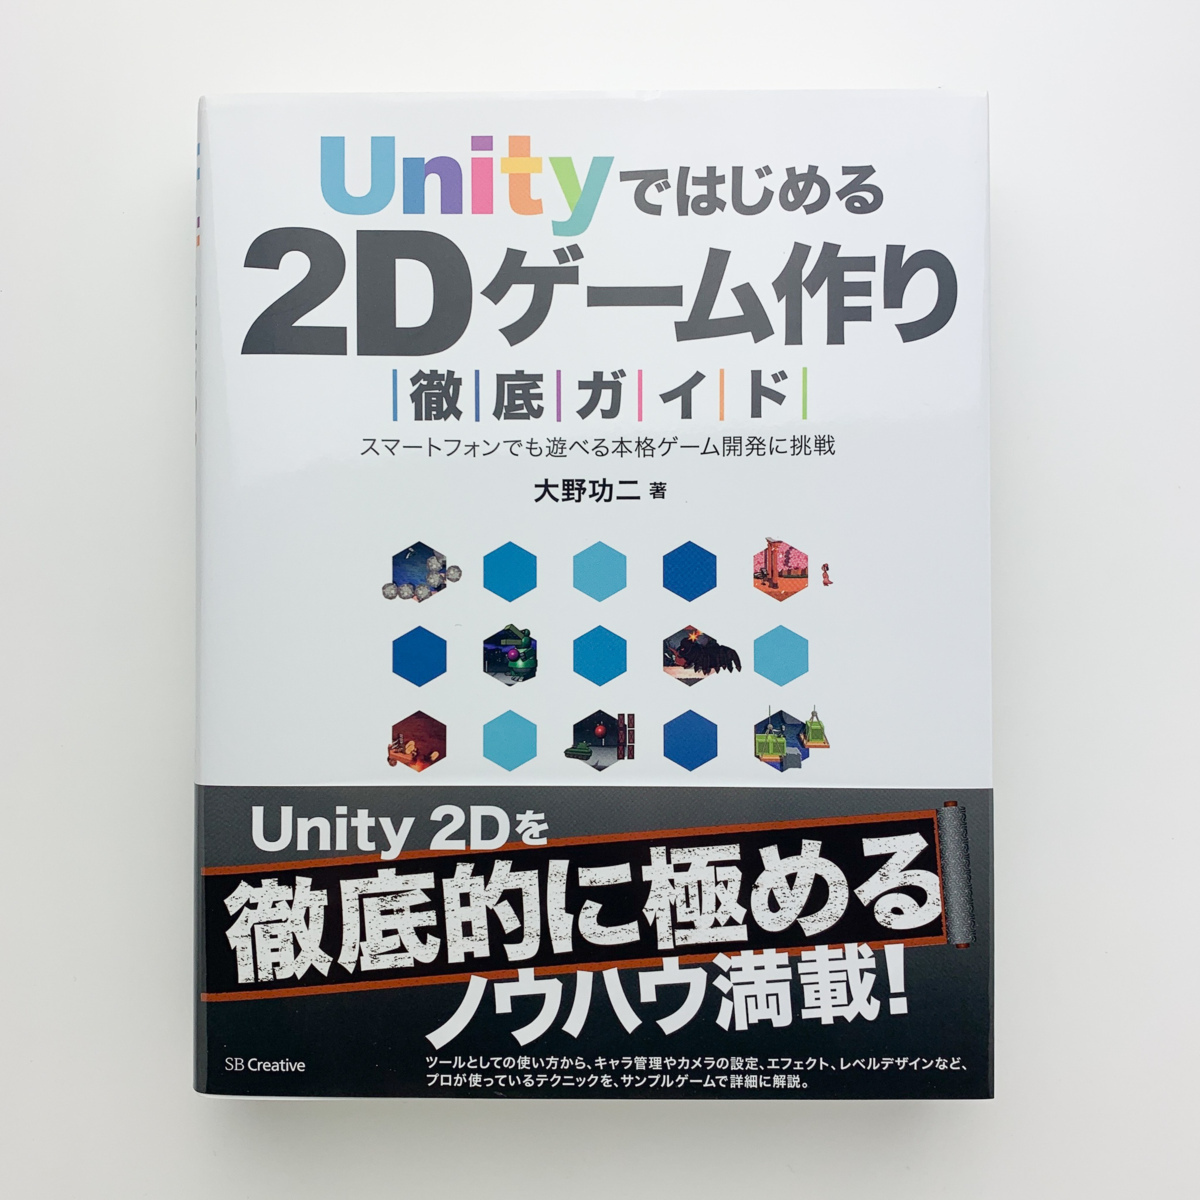 Unity. впервые .2D игра конструкция тщательный гид Oono . 2 2014 год первая версия no. 1.SB Creative